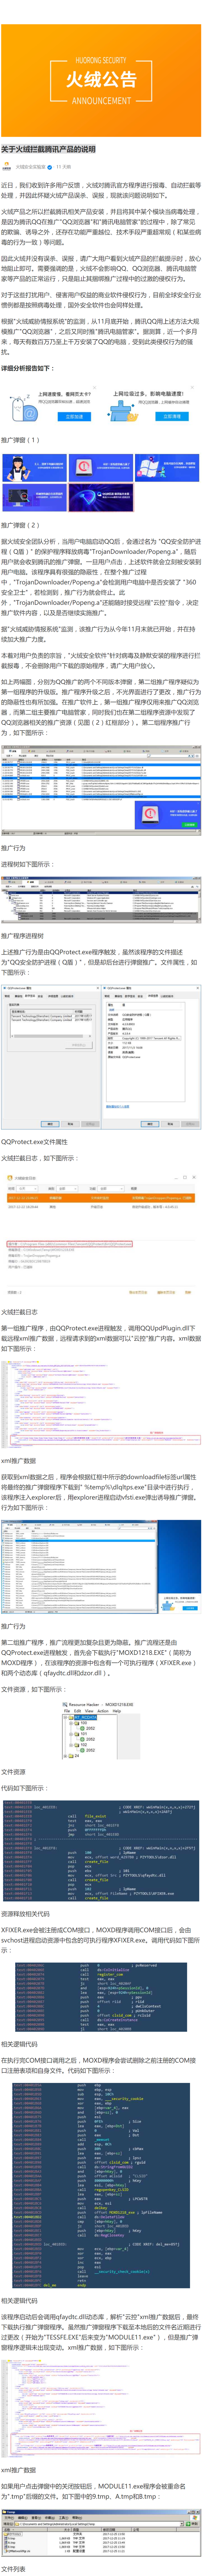 screenshot-zhuanlan.zhihu.com-2018-01-05-21-13-40-923.png